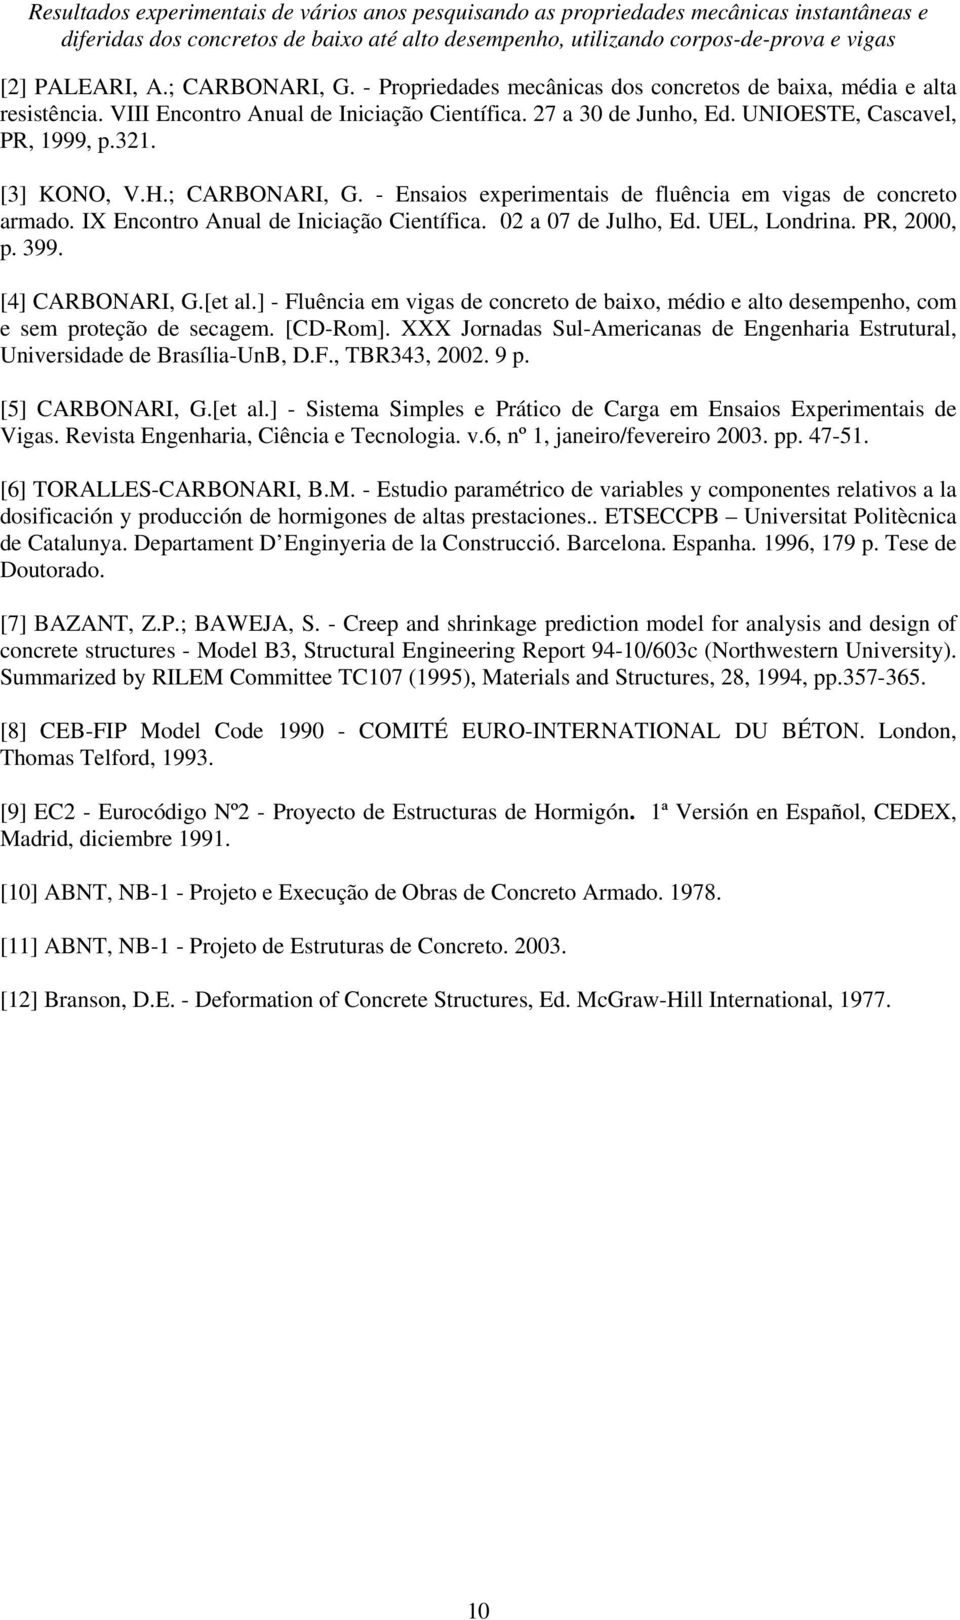 [3] KONO, V.H.; CARBONARI, G. - Ensaios experimentais de fluência em vigas de concreto armado. IX Encontro Anual de Iniciação Científica. 02 a 07 de Julho, Ed. UEL, Londrina. PR, 2000, p. 399.